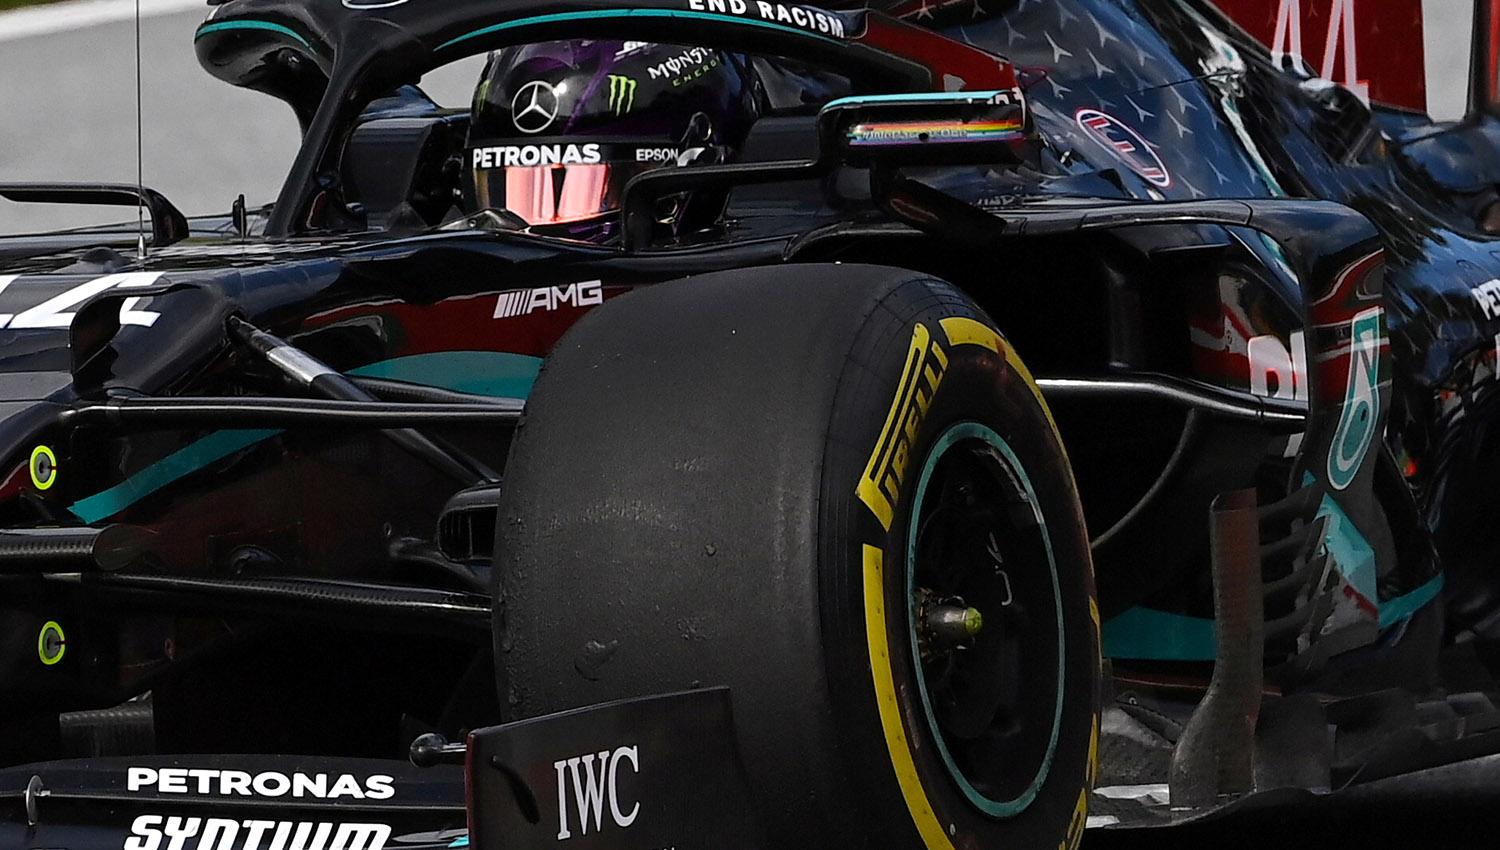 Nada nuevo en la Fórmula Uno. Hamilton voló con su Flecha, ahora pintada de negro. (Reuters)